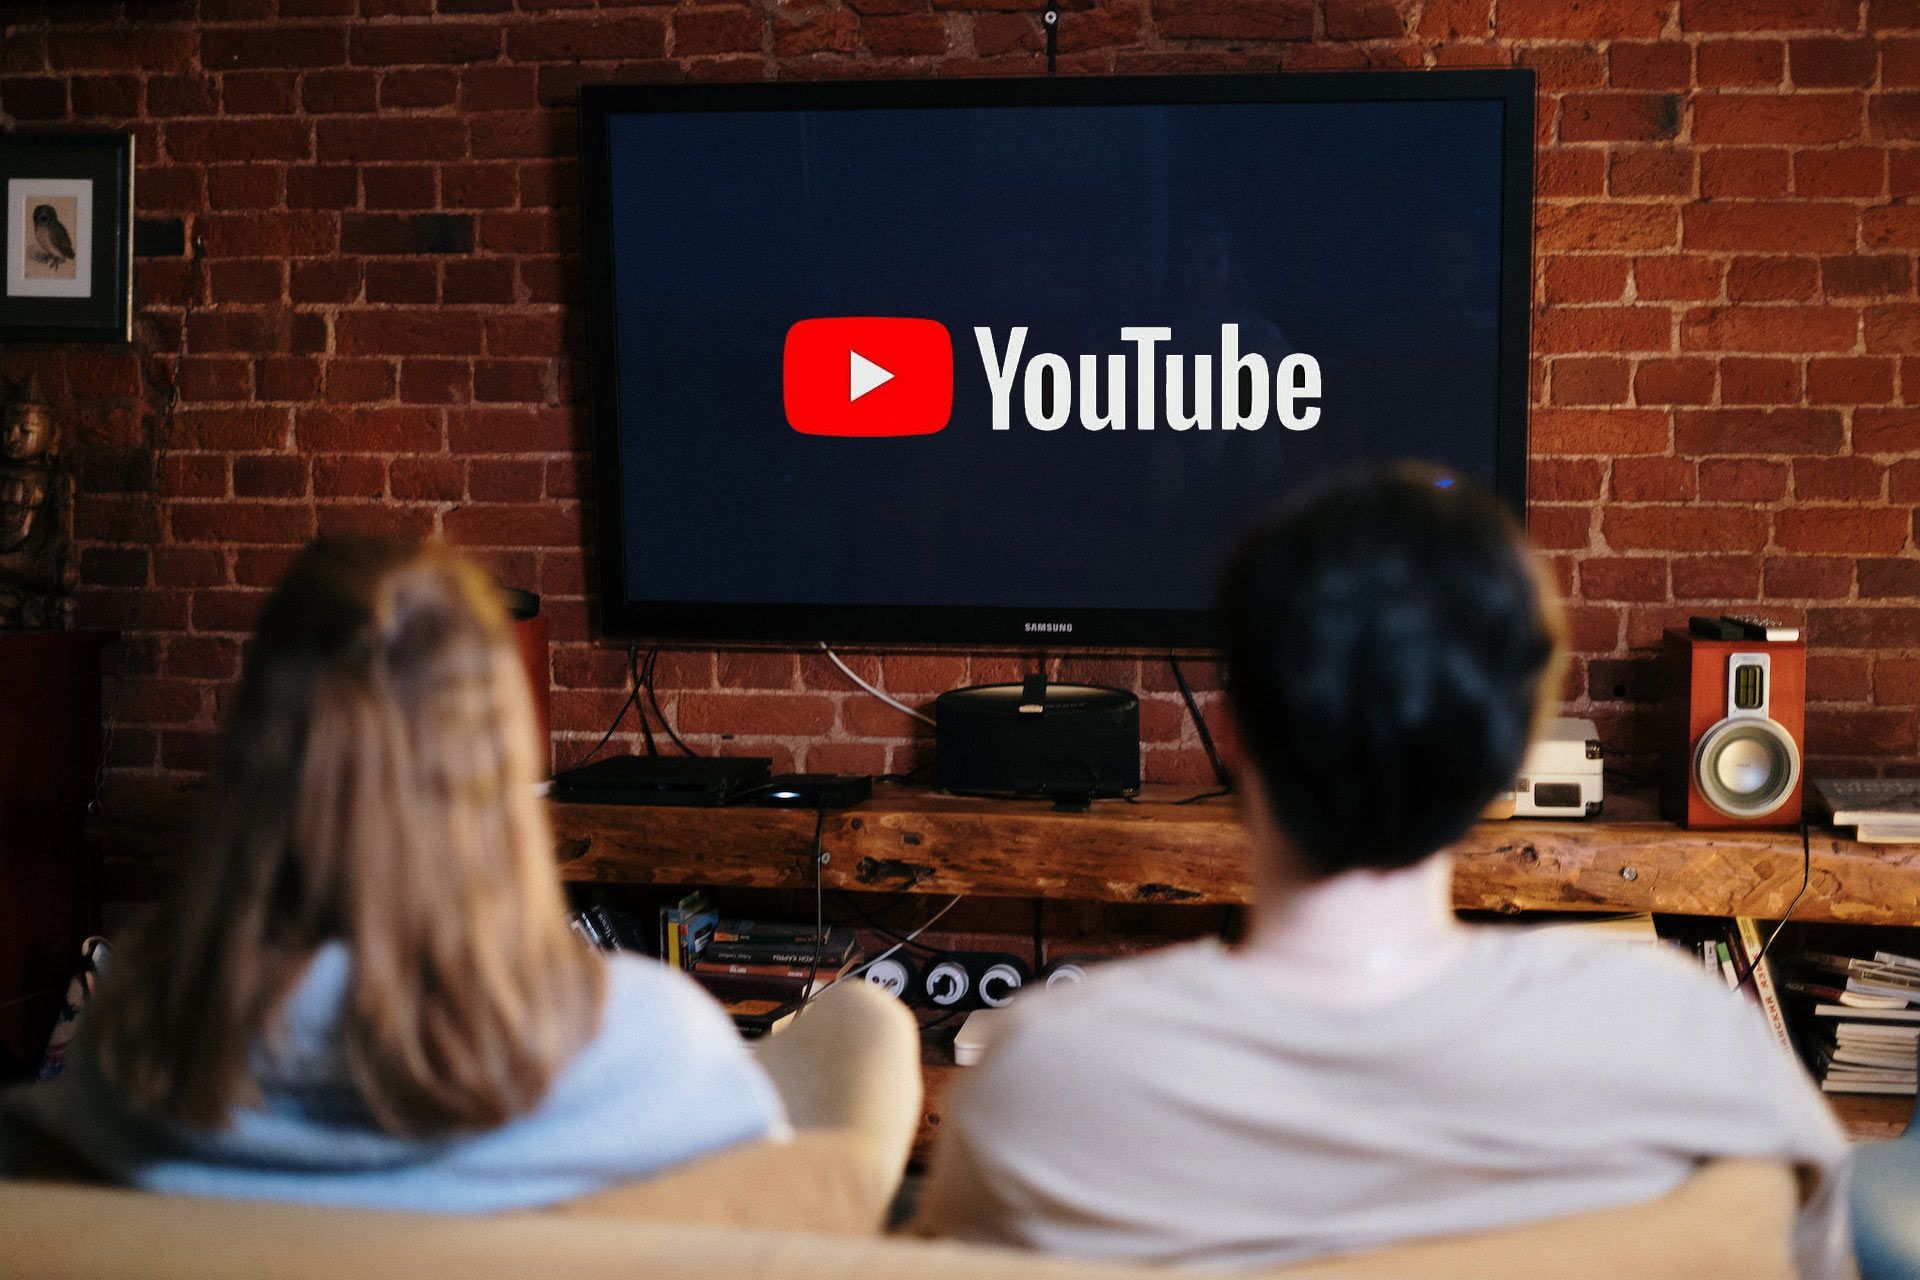 Duas pessoas estão olhando para uma televisão com o logotipo do YouTube exibido. 